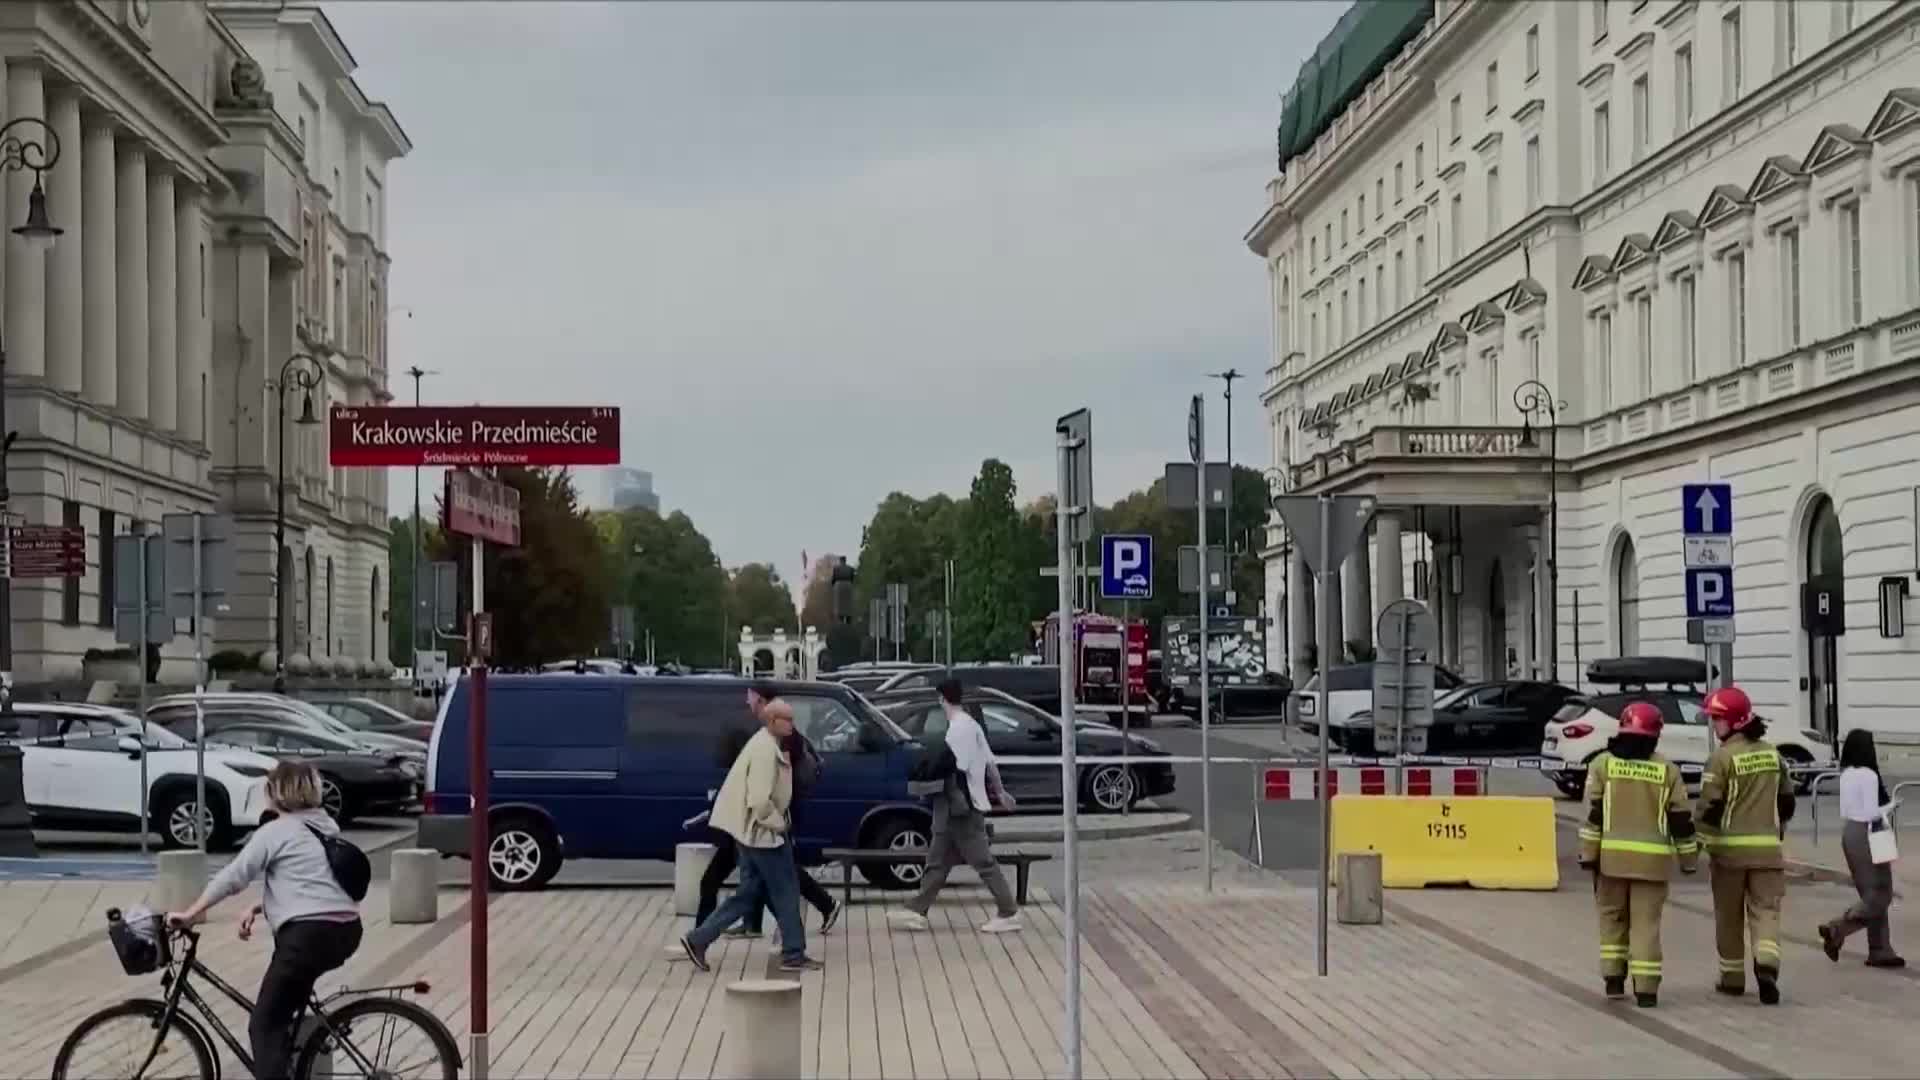 Отцепиха централен площад във Варшава заради бомбена заплаха (ВИДЕО)